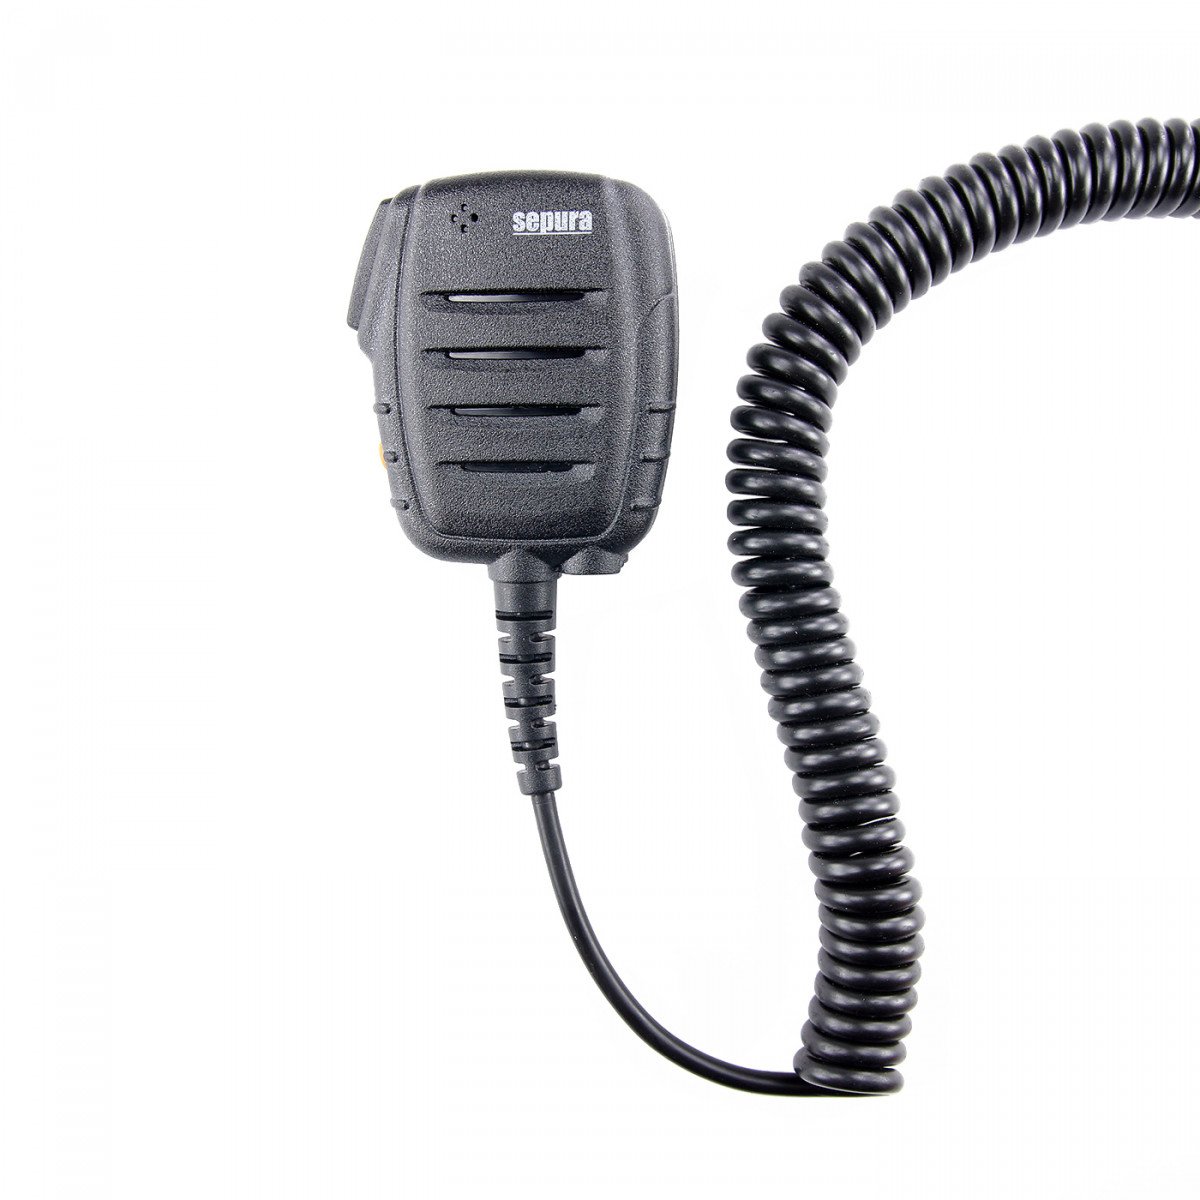 SEPURA Faustmikrofon für Kfz-Einbausatz des STP8/9000 und SC20/SC21 300-00571